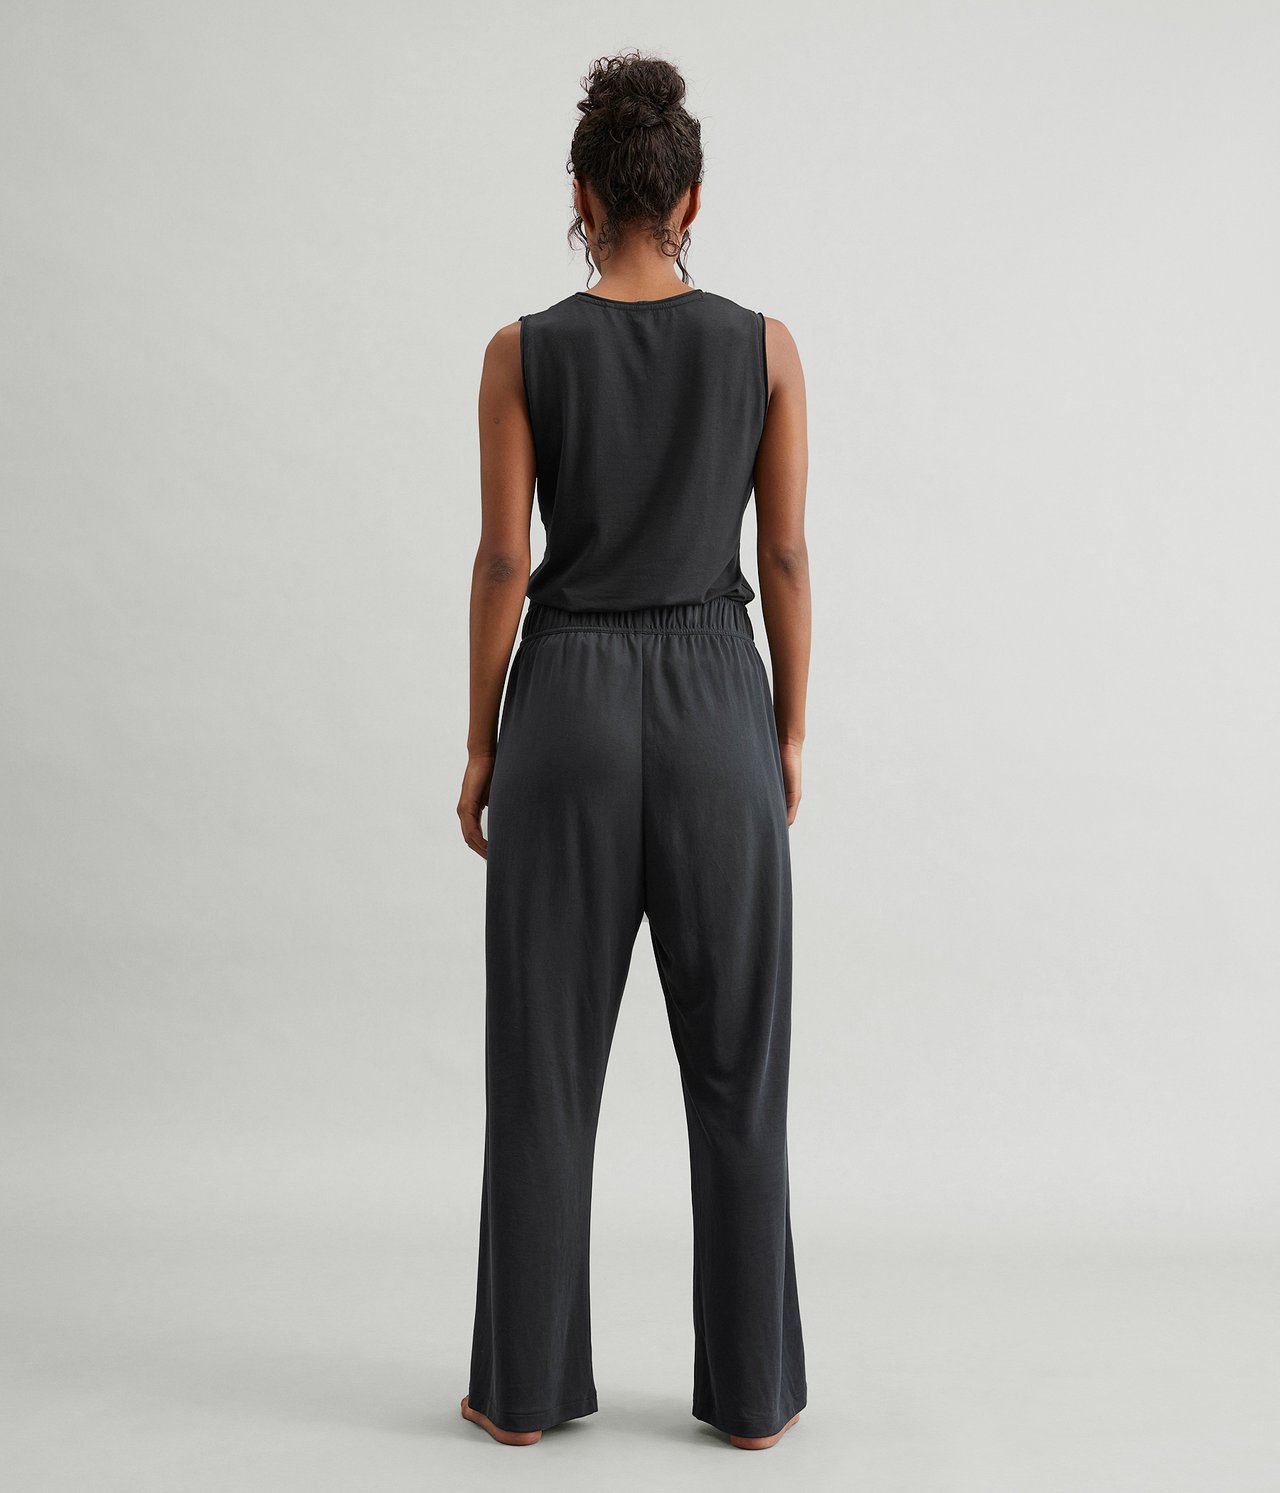 Spodnie trykotowe Loungewear - Czarne - 4